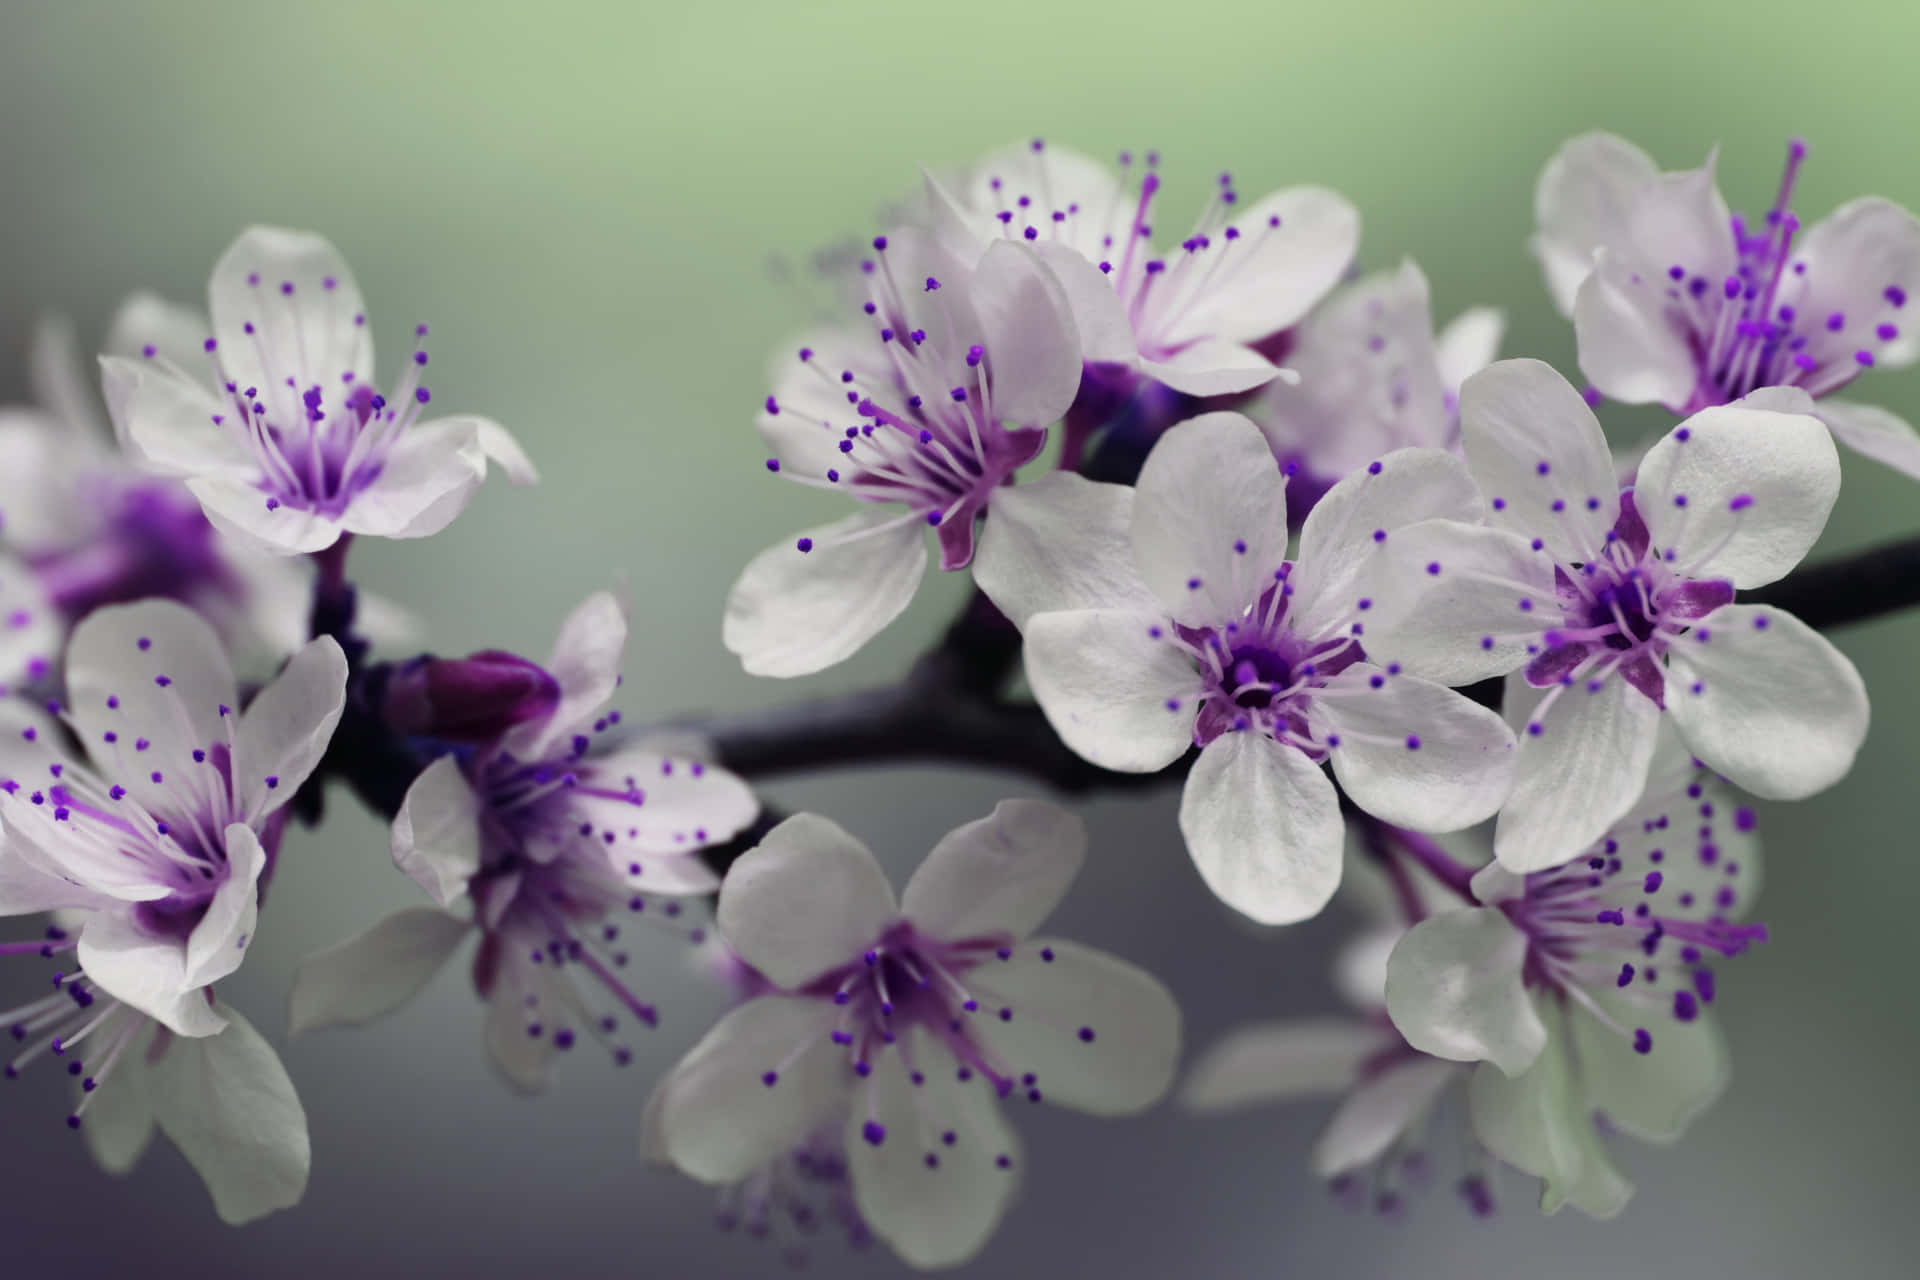 A Beautiful Purple Flower in Bloom